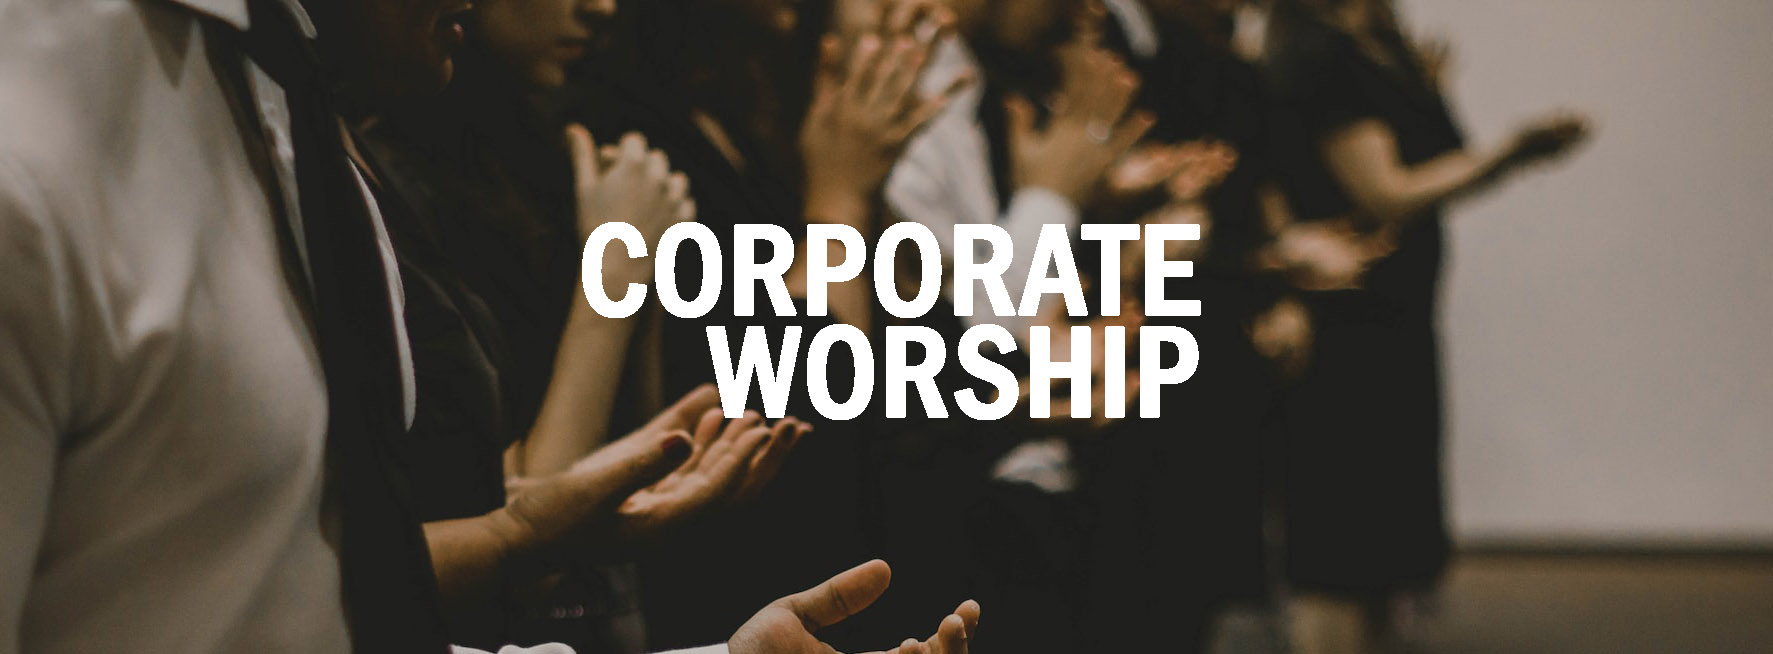 Corporate Worship - 1